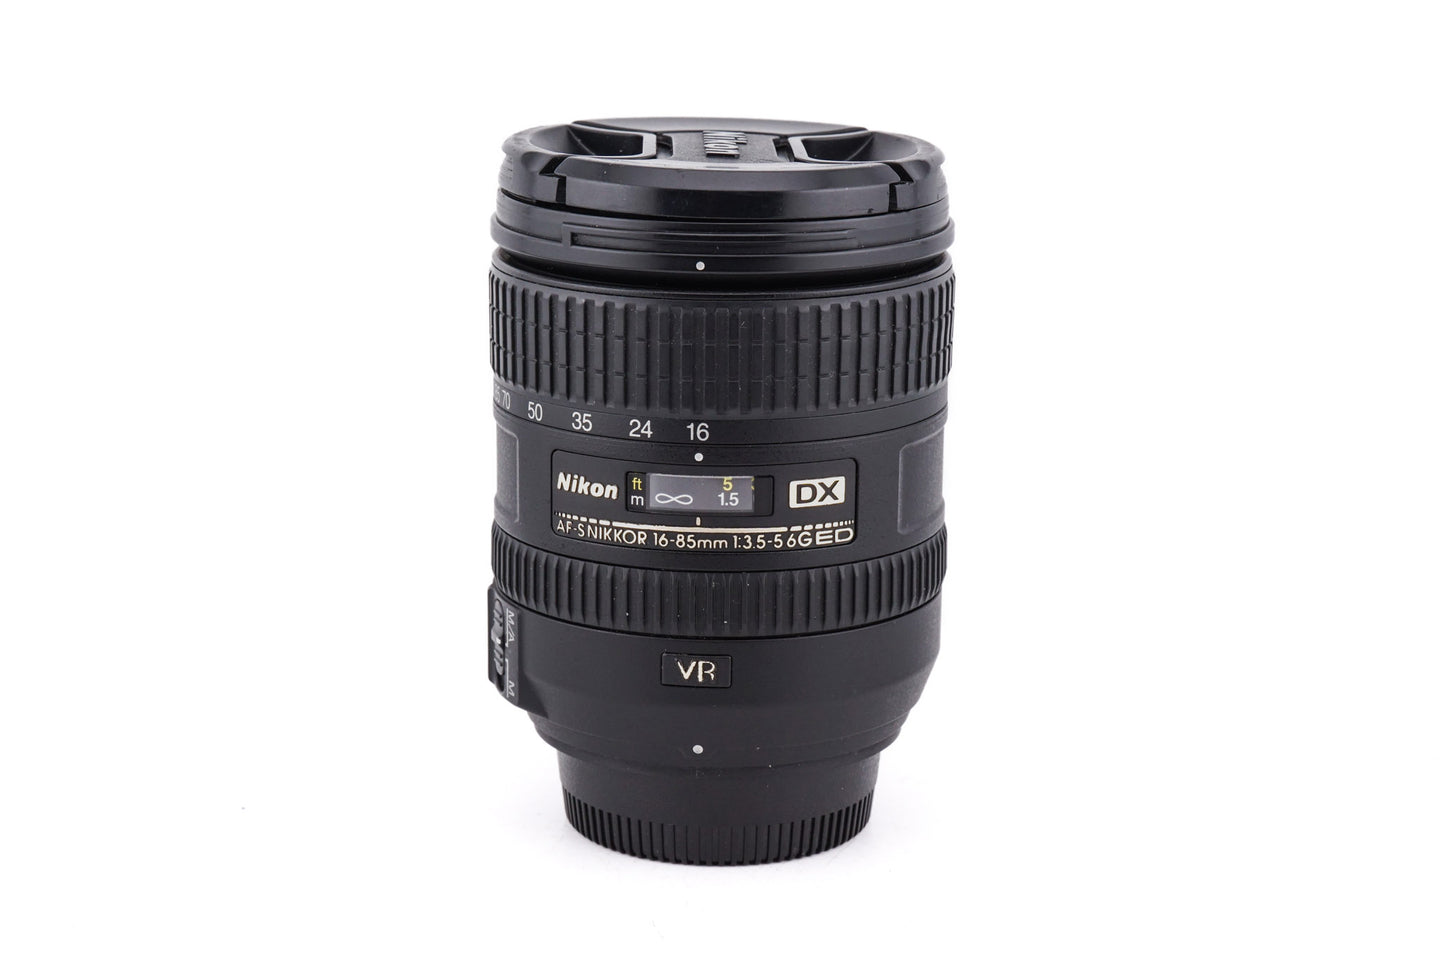 Nikon 16-85mm f3.5-5.6 G ED VR AF-S Nikkor - Lens